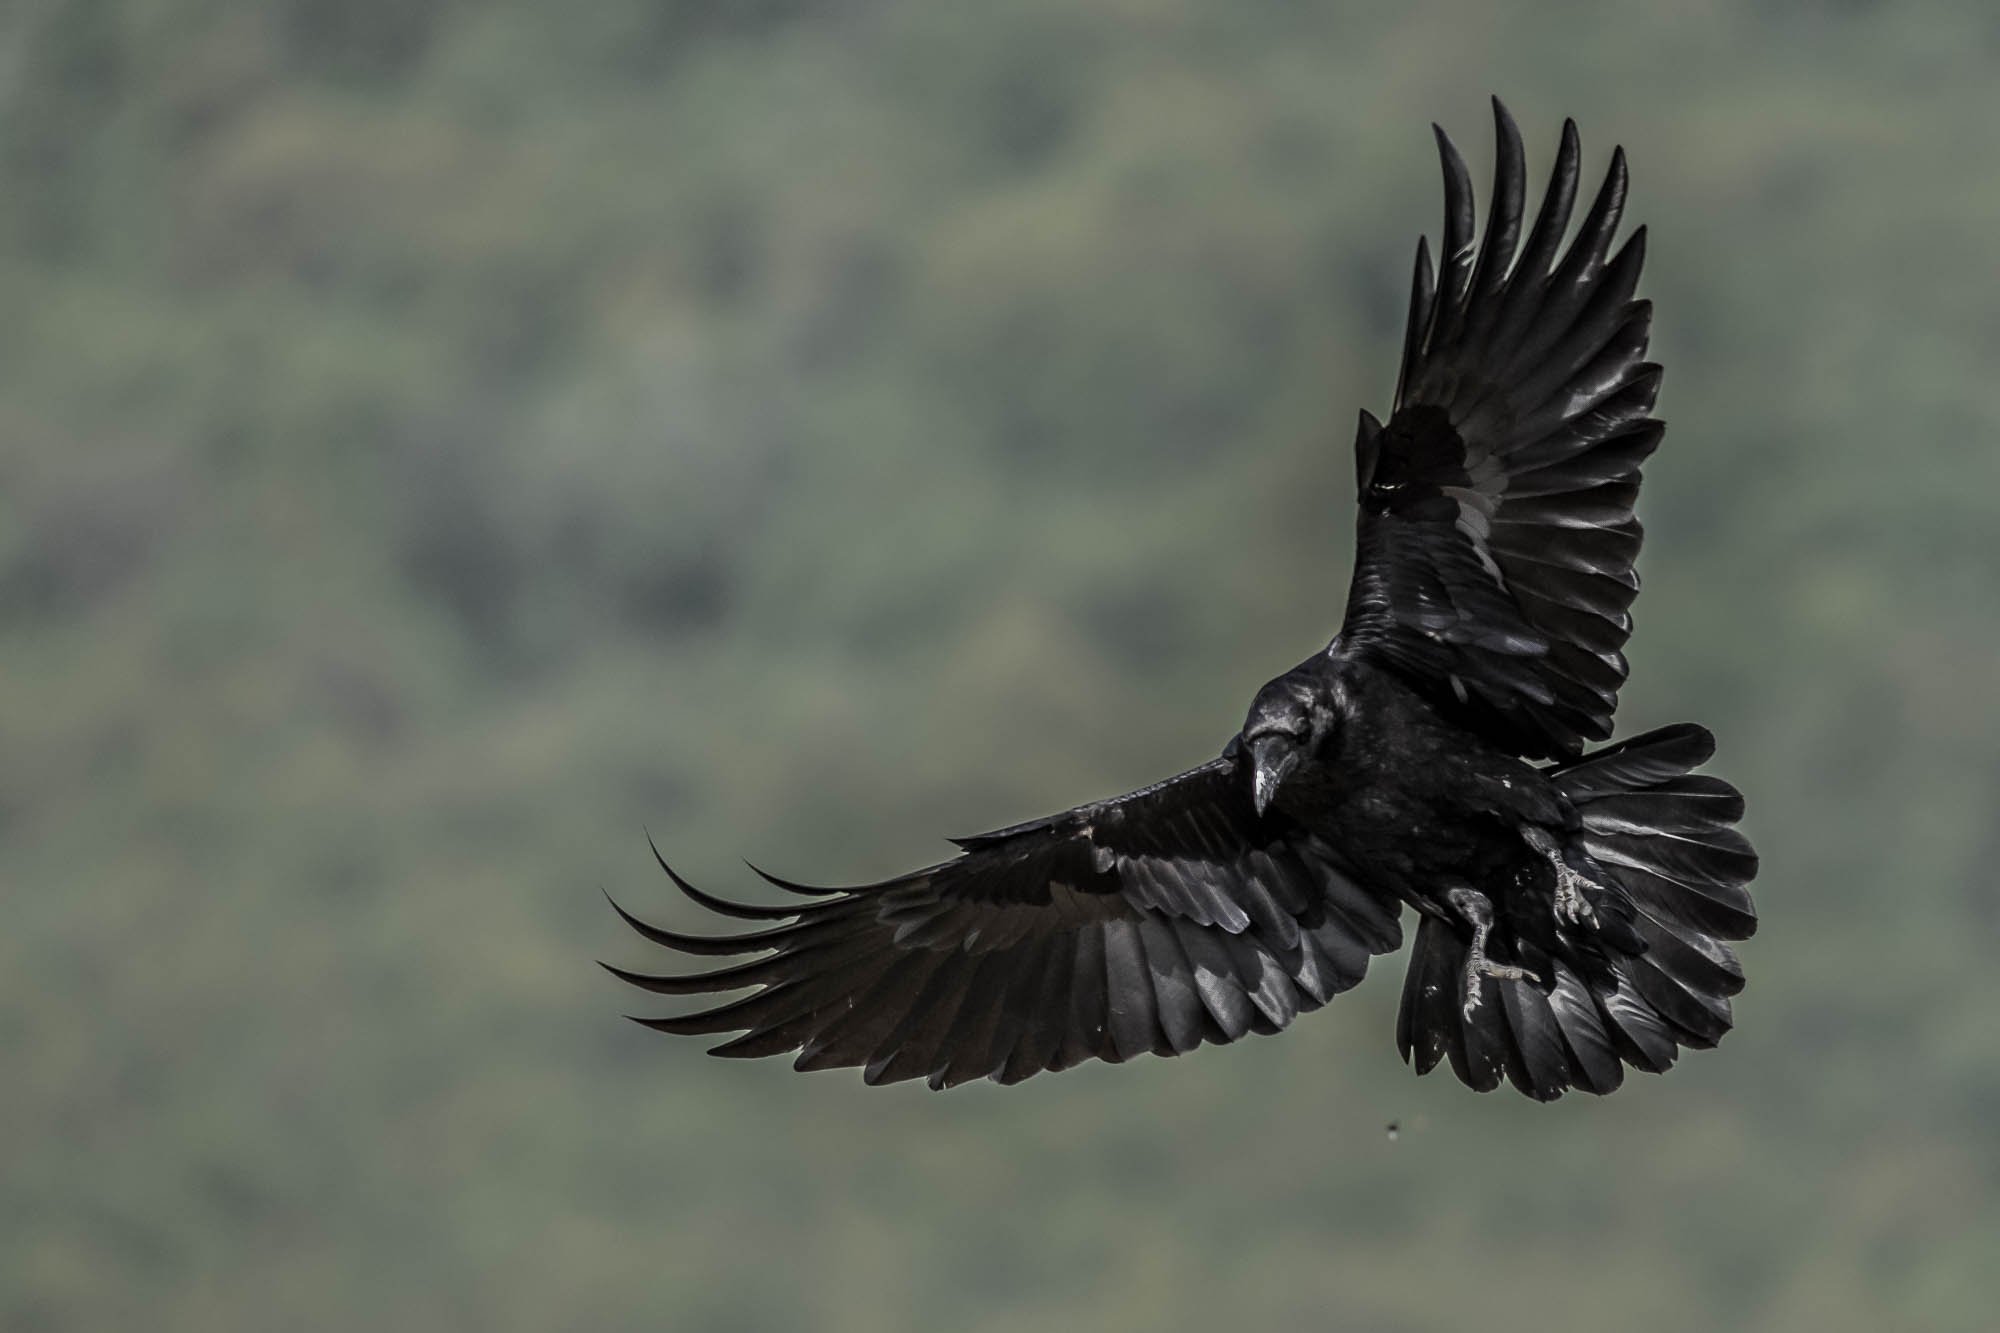 #mountain #wildlife #fly #bird #raven #actoin #portrait #adventure #animal #places #nature, Nikolay Nikolov